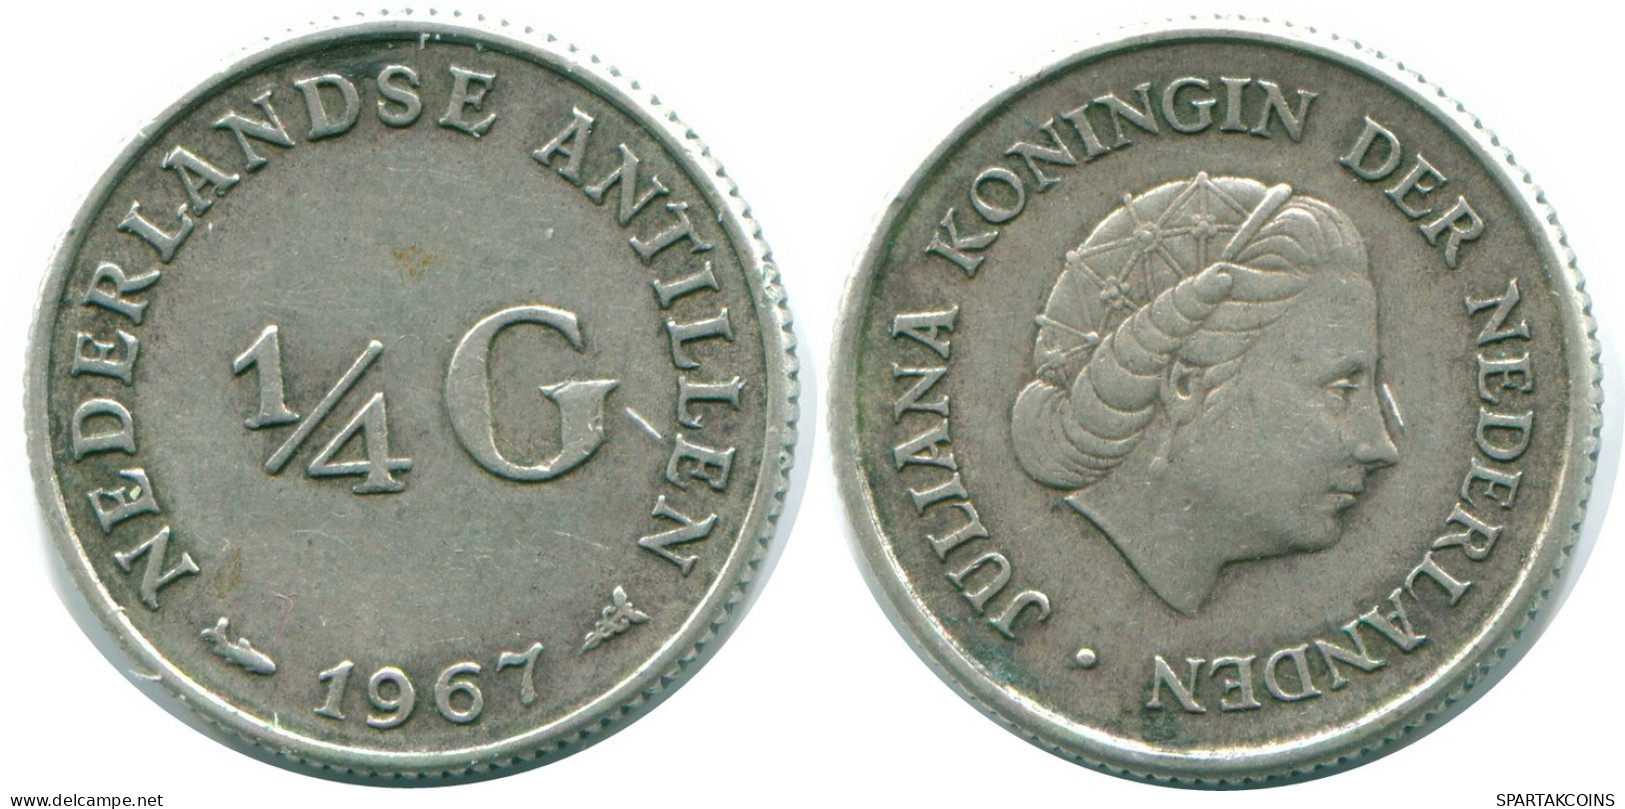 1/4 GULDEN 1967 NIEDERLÄNDISCHE ANTILLEN SILBER Koloniale Münze #NL11590.4.D.A - Antillas Neerlandesas